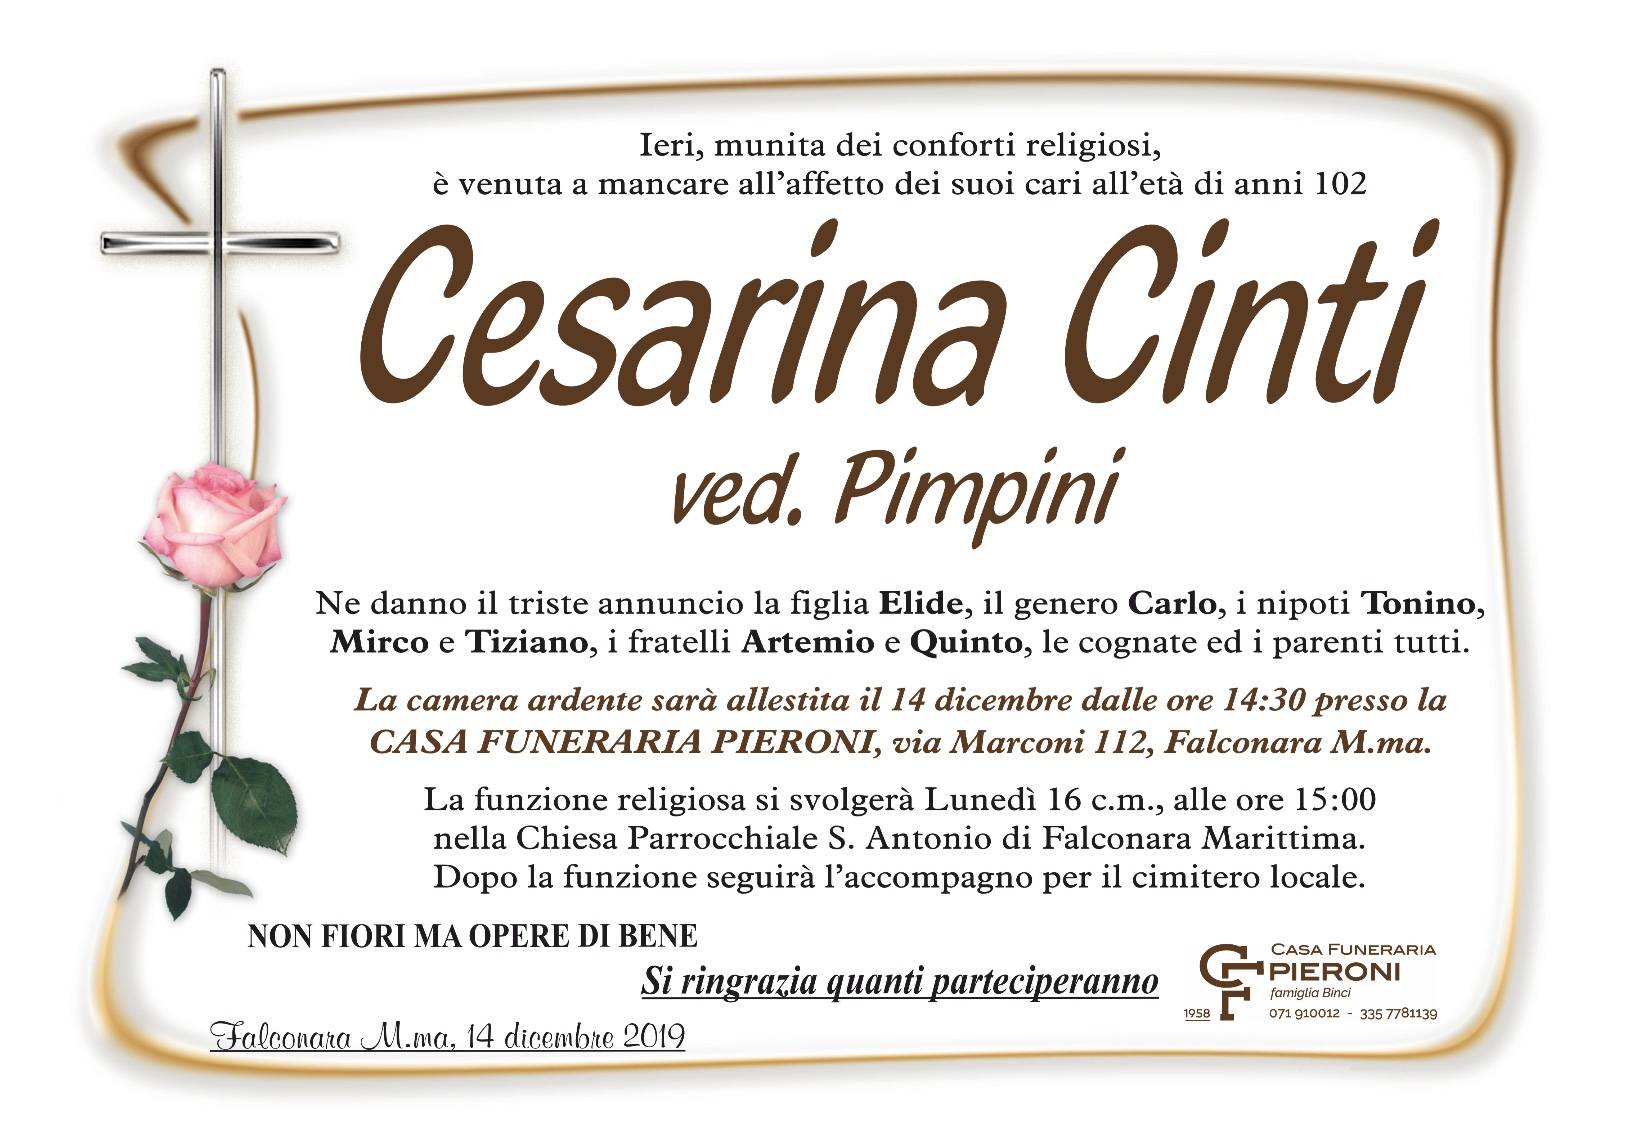 Cesarina Cinti